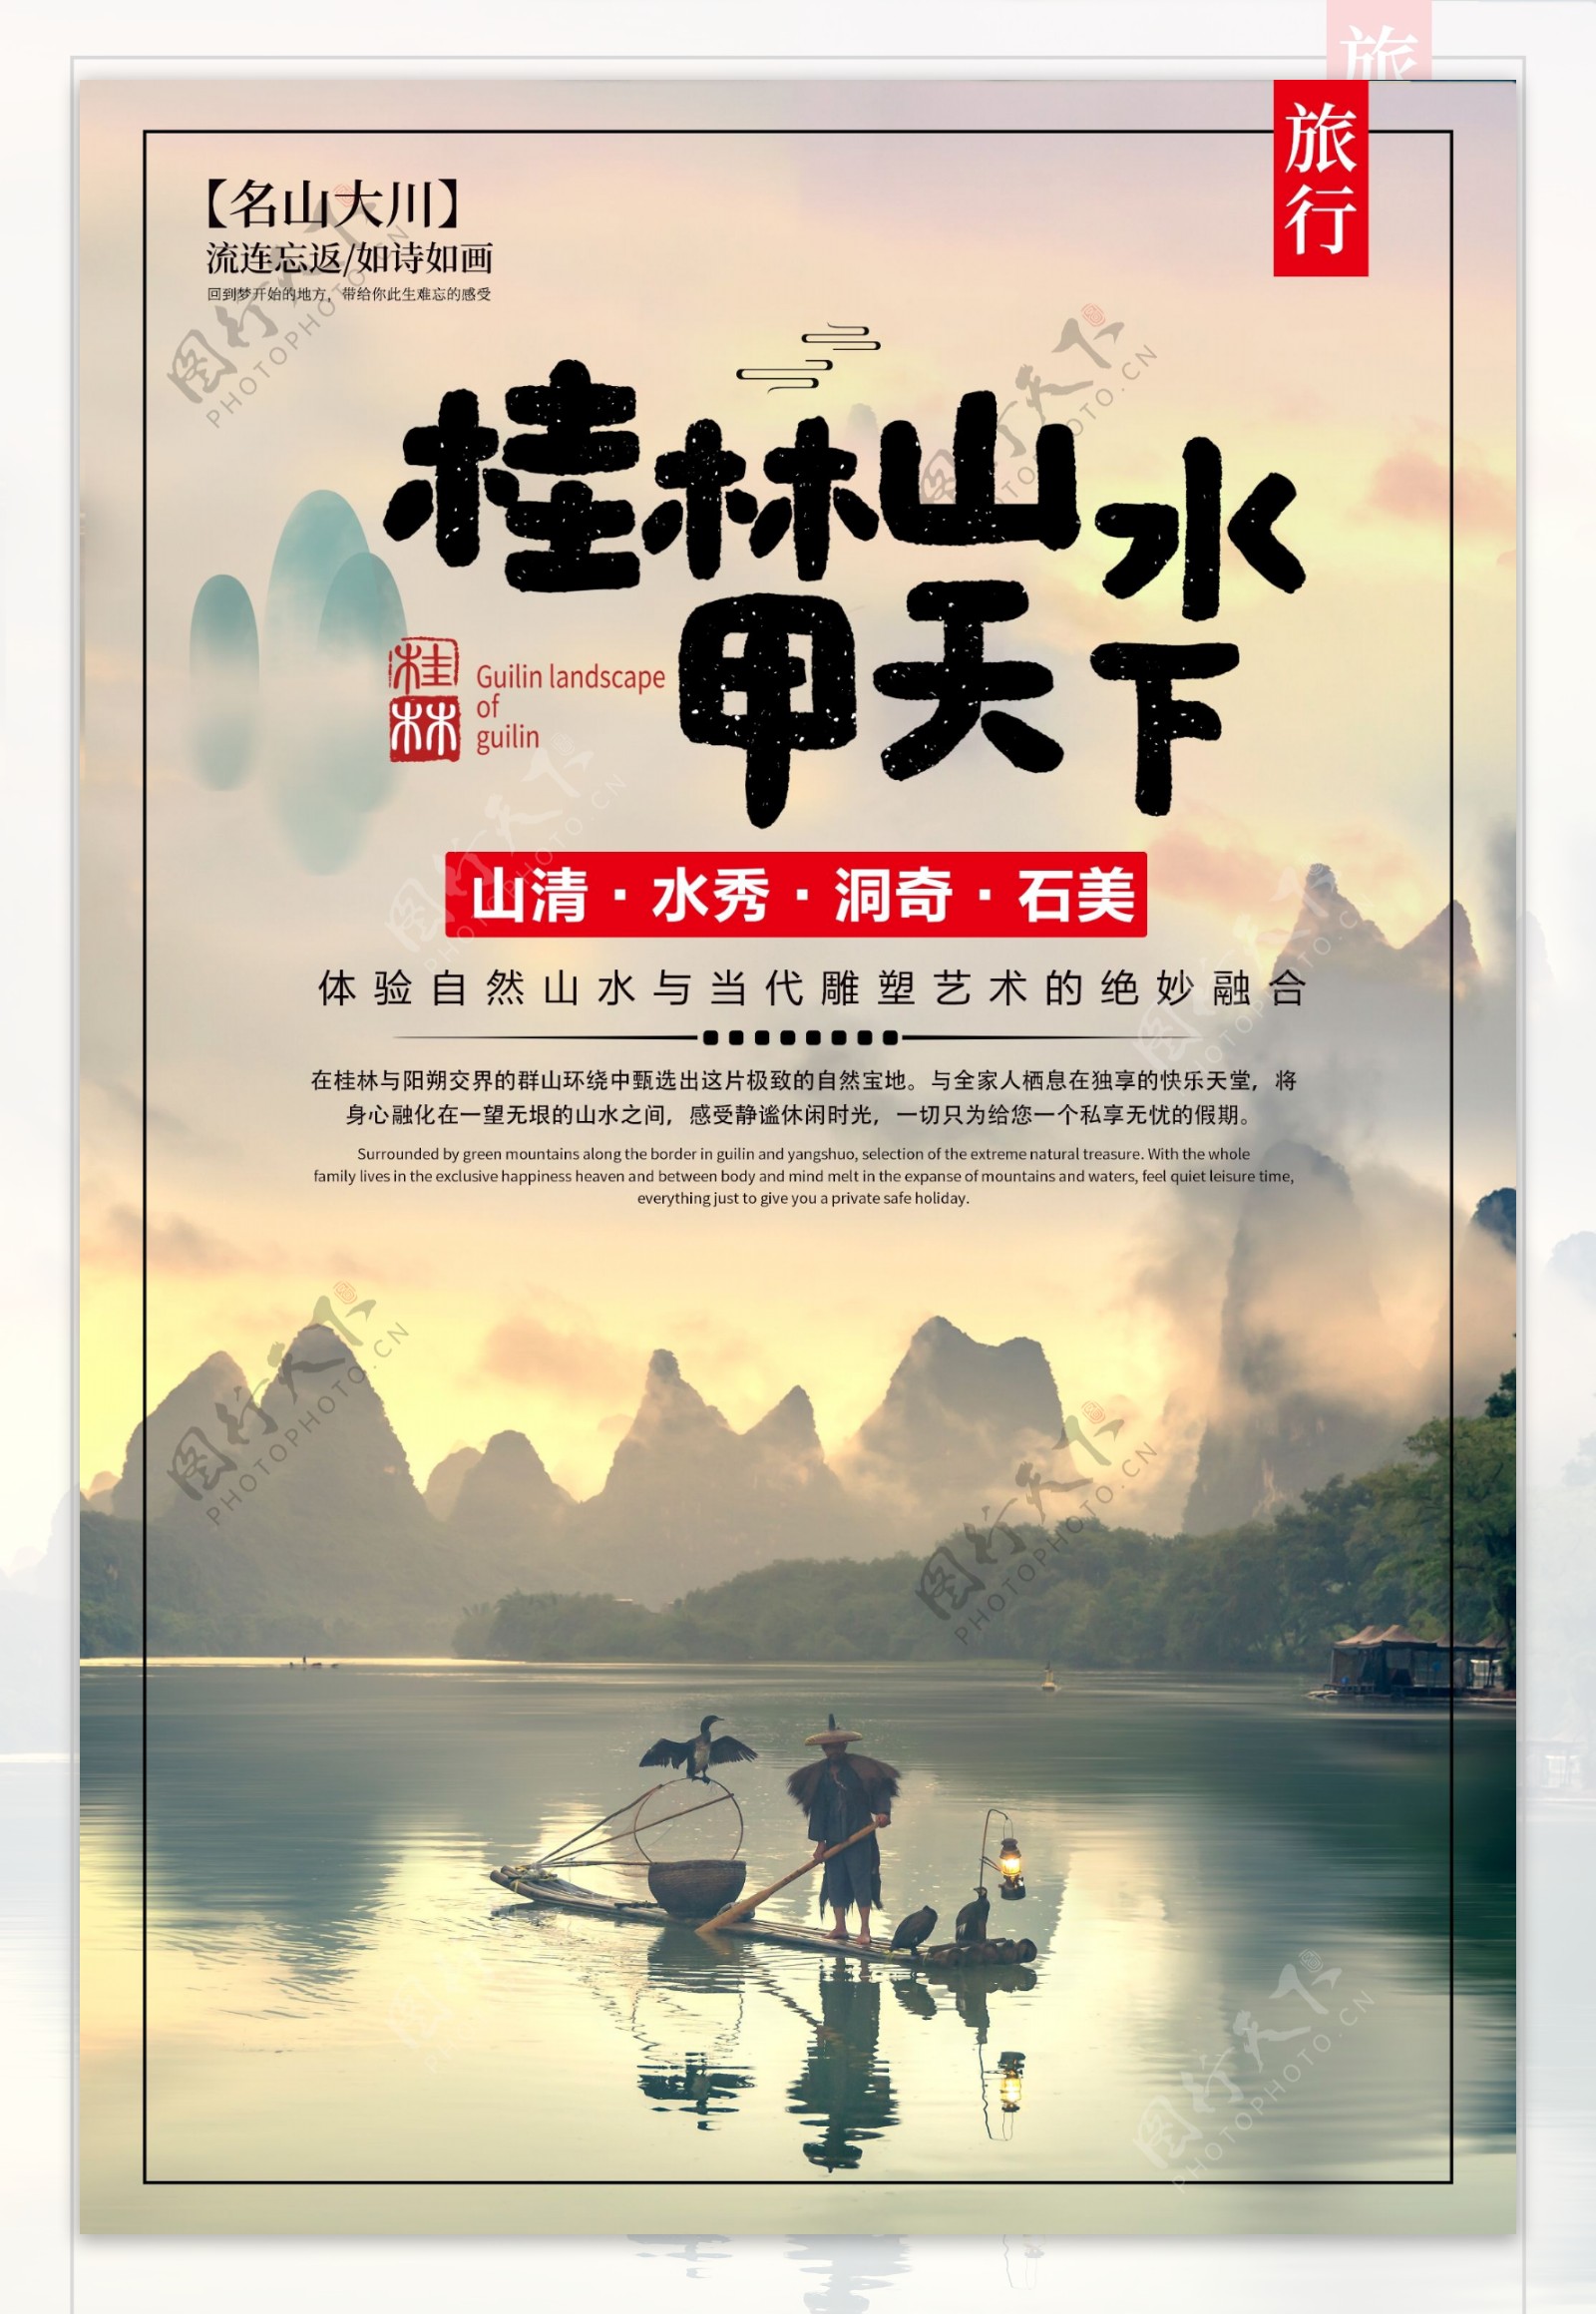 桂林山水旅游景点景区活动海报